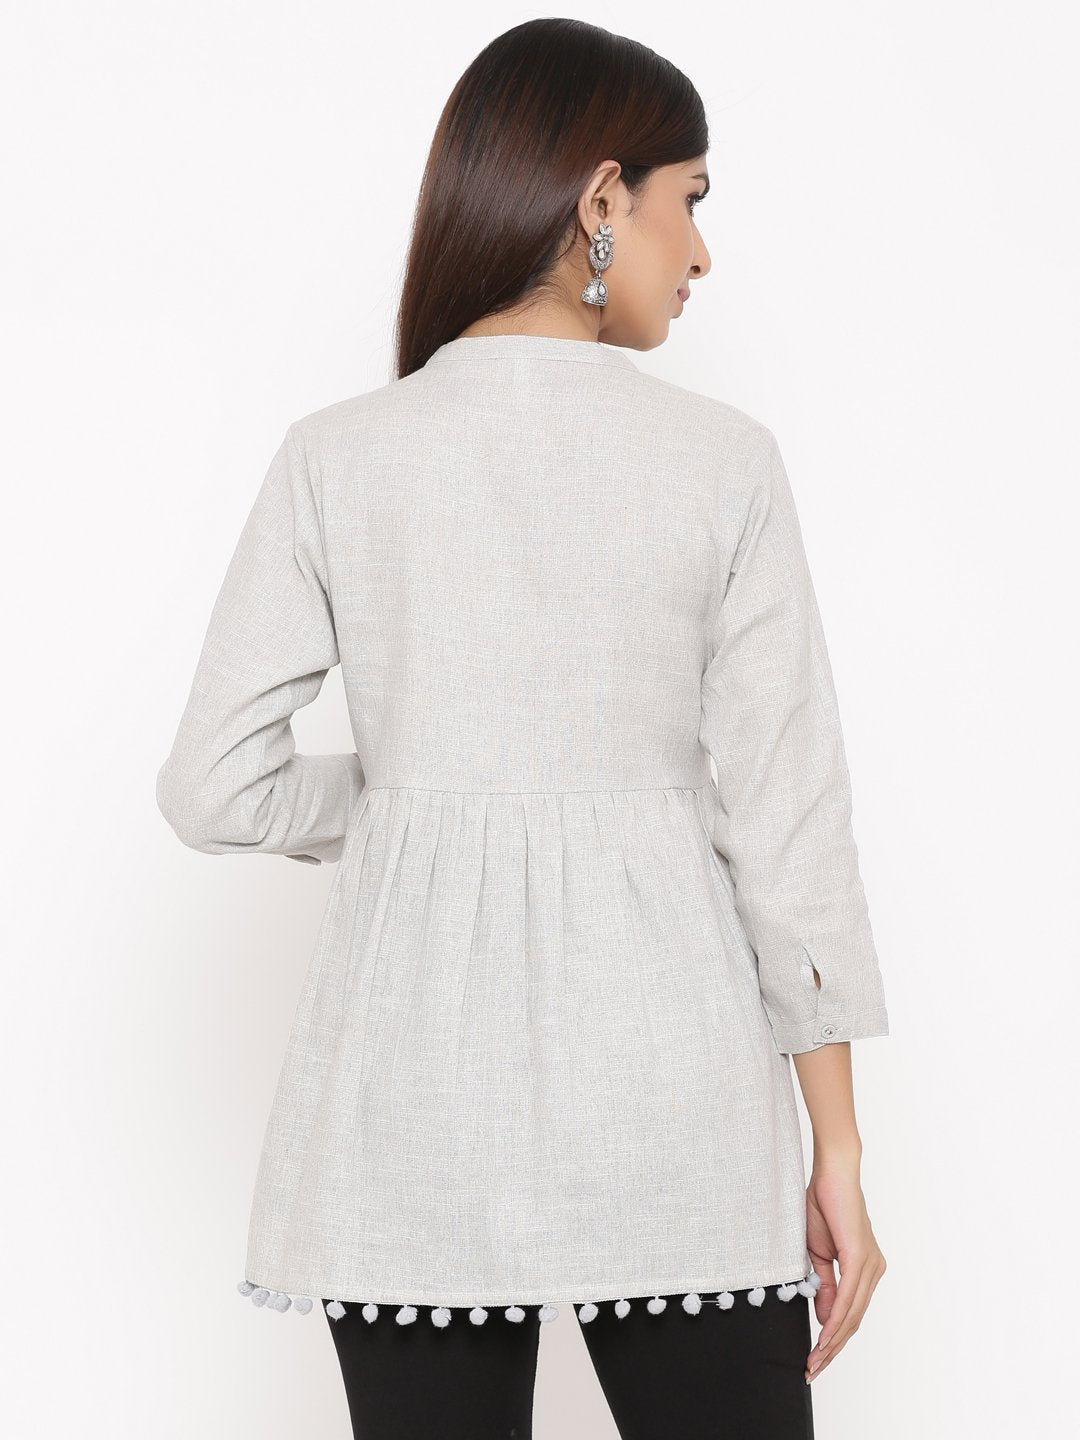 Women's Light Grey Cotton Tunic Top by Kipek (1pc)